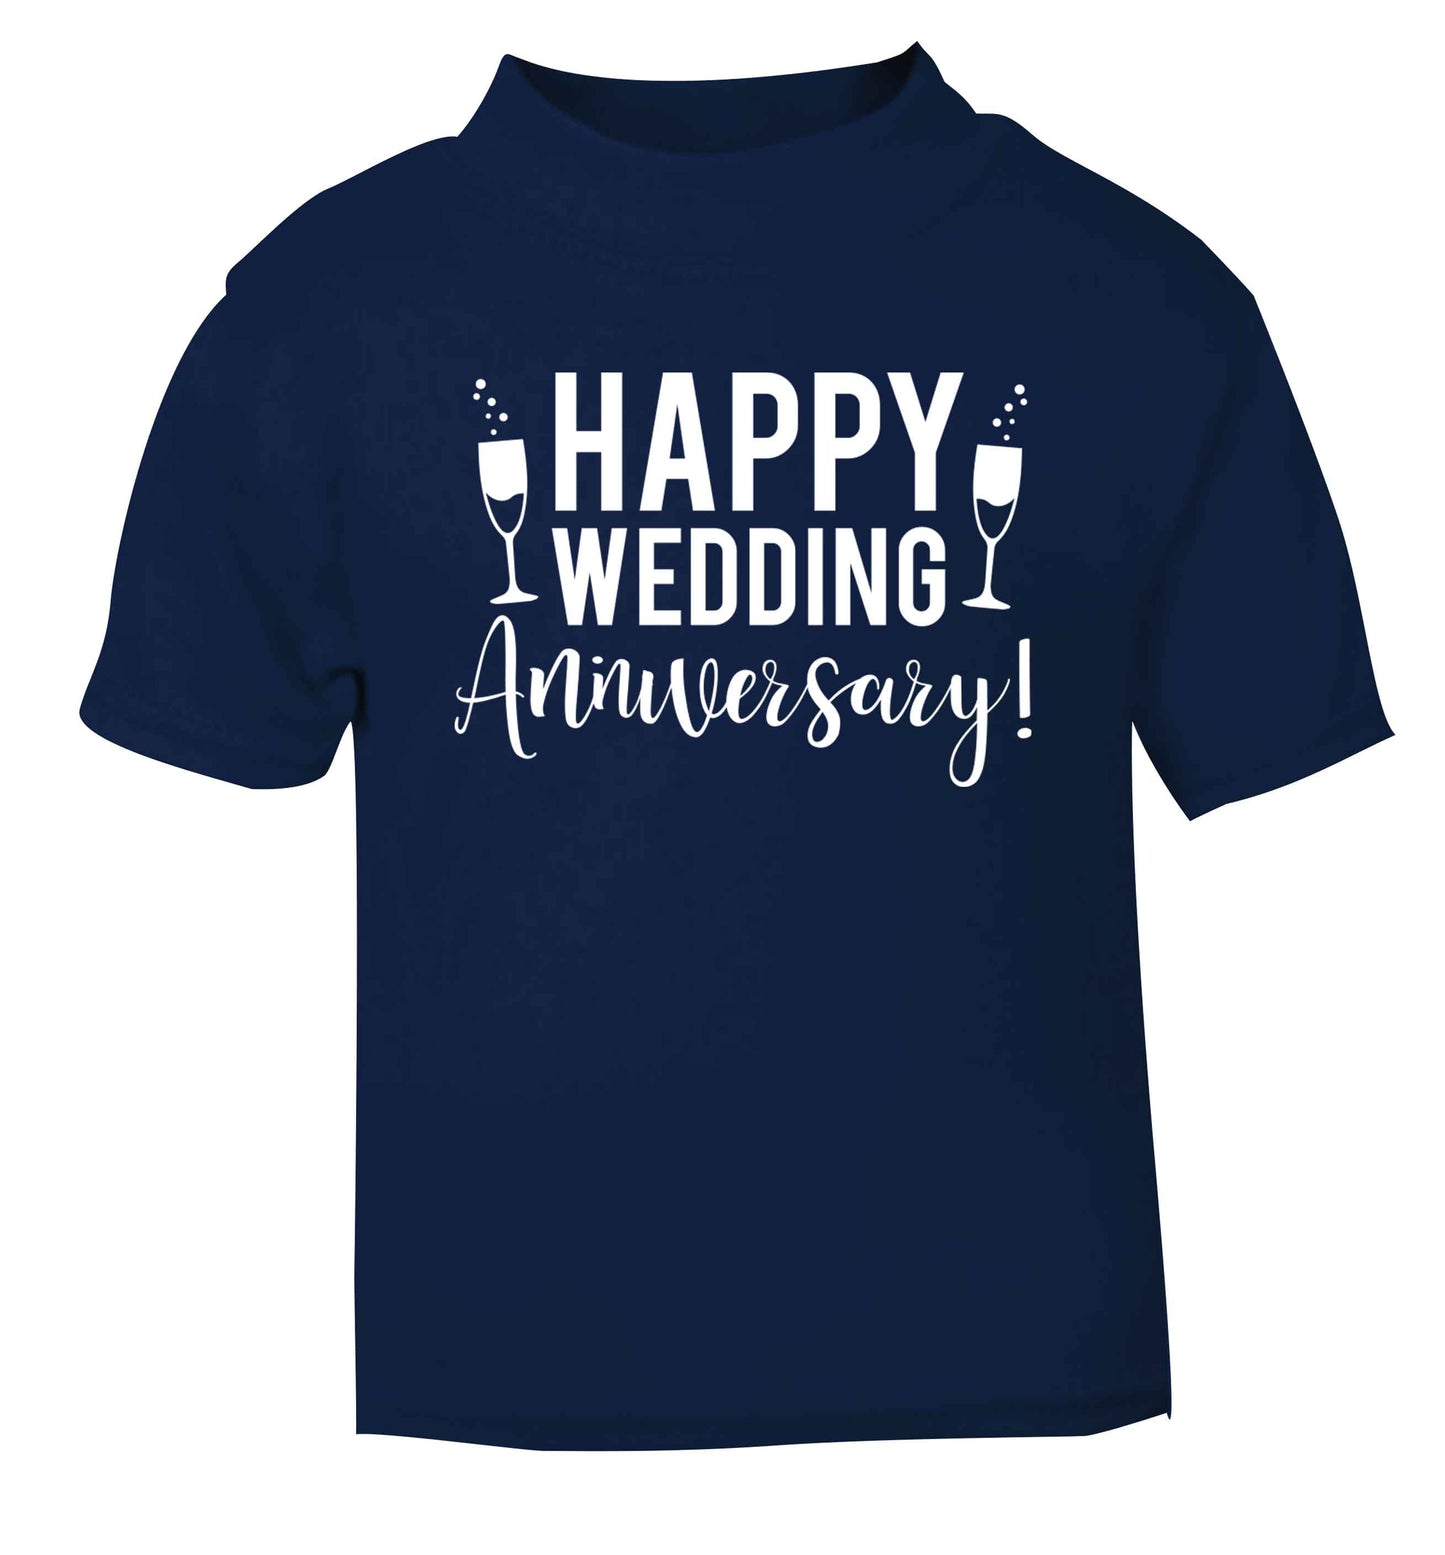 Happy wedding anniversary! navy baby toddler Tshirt 2 Years